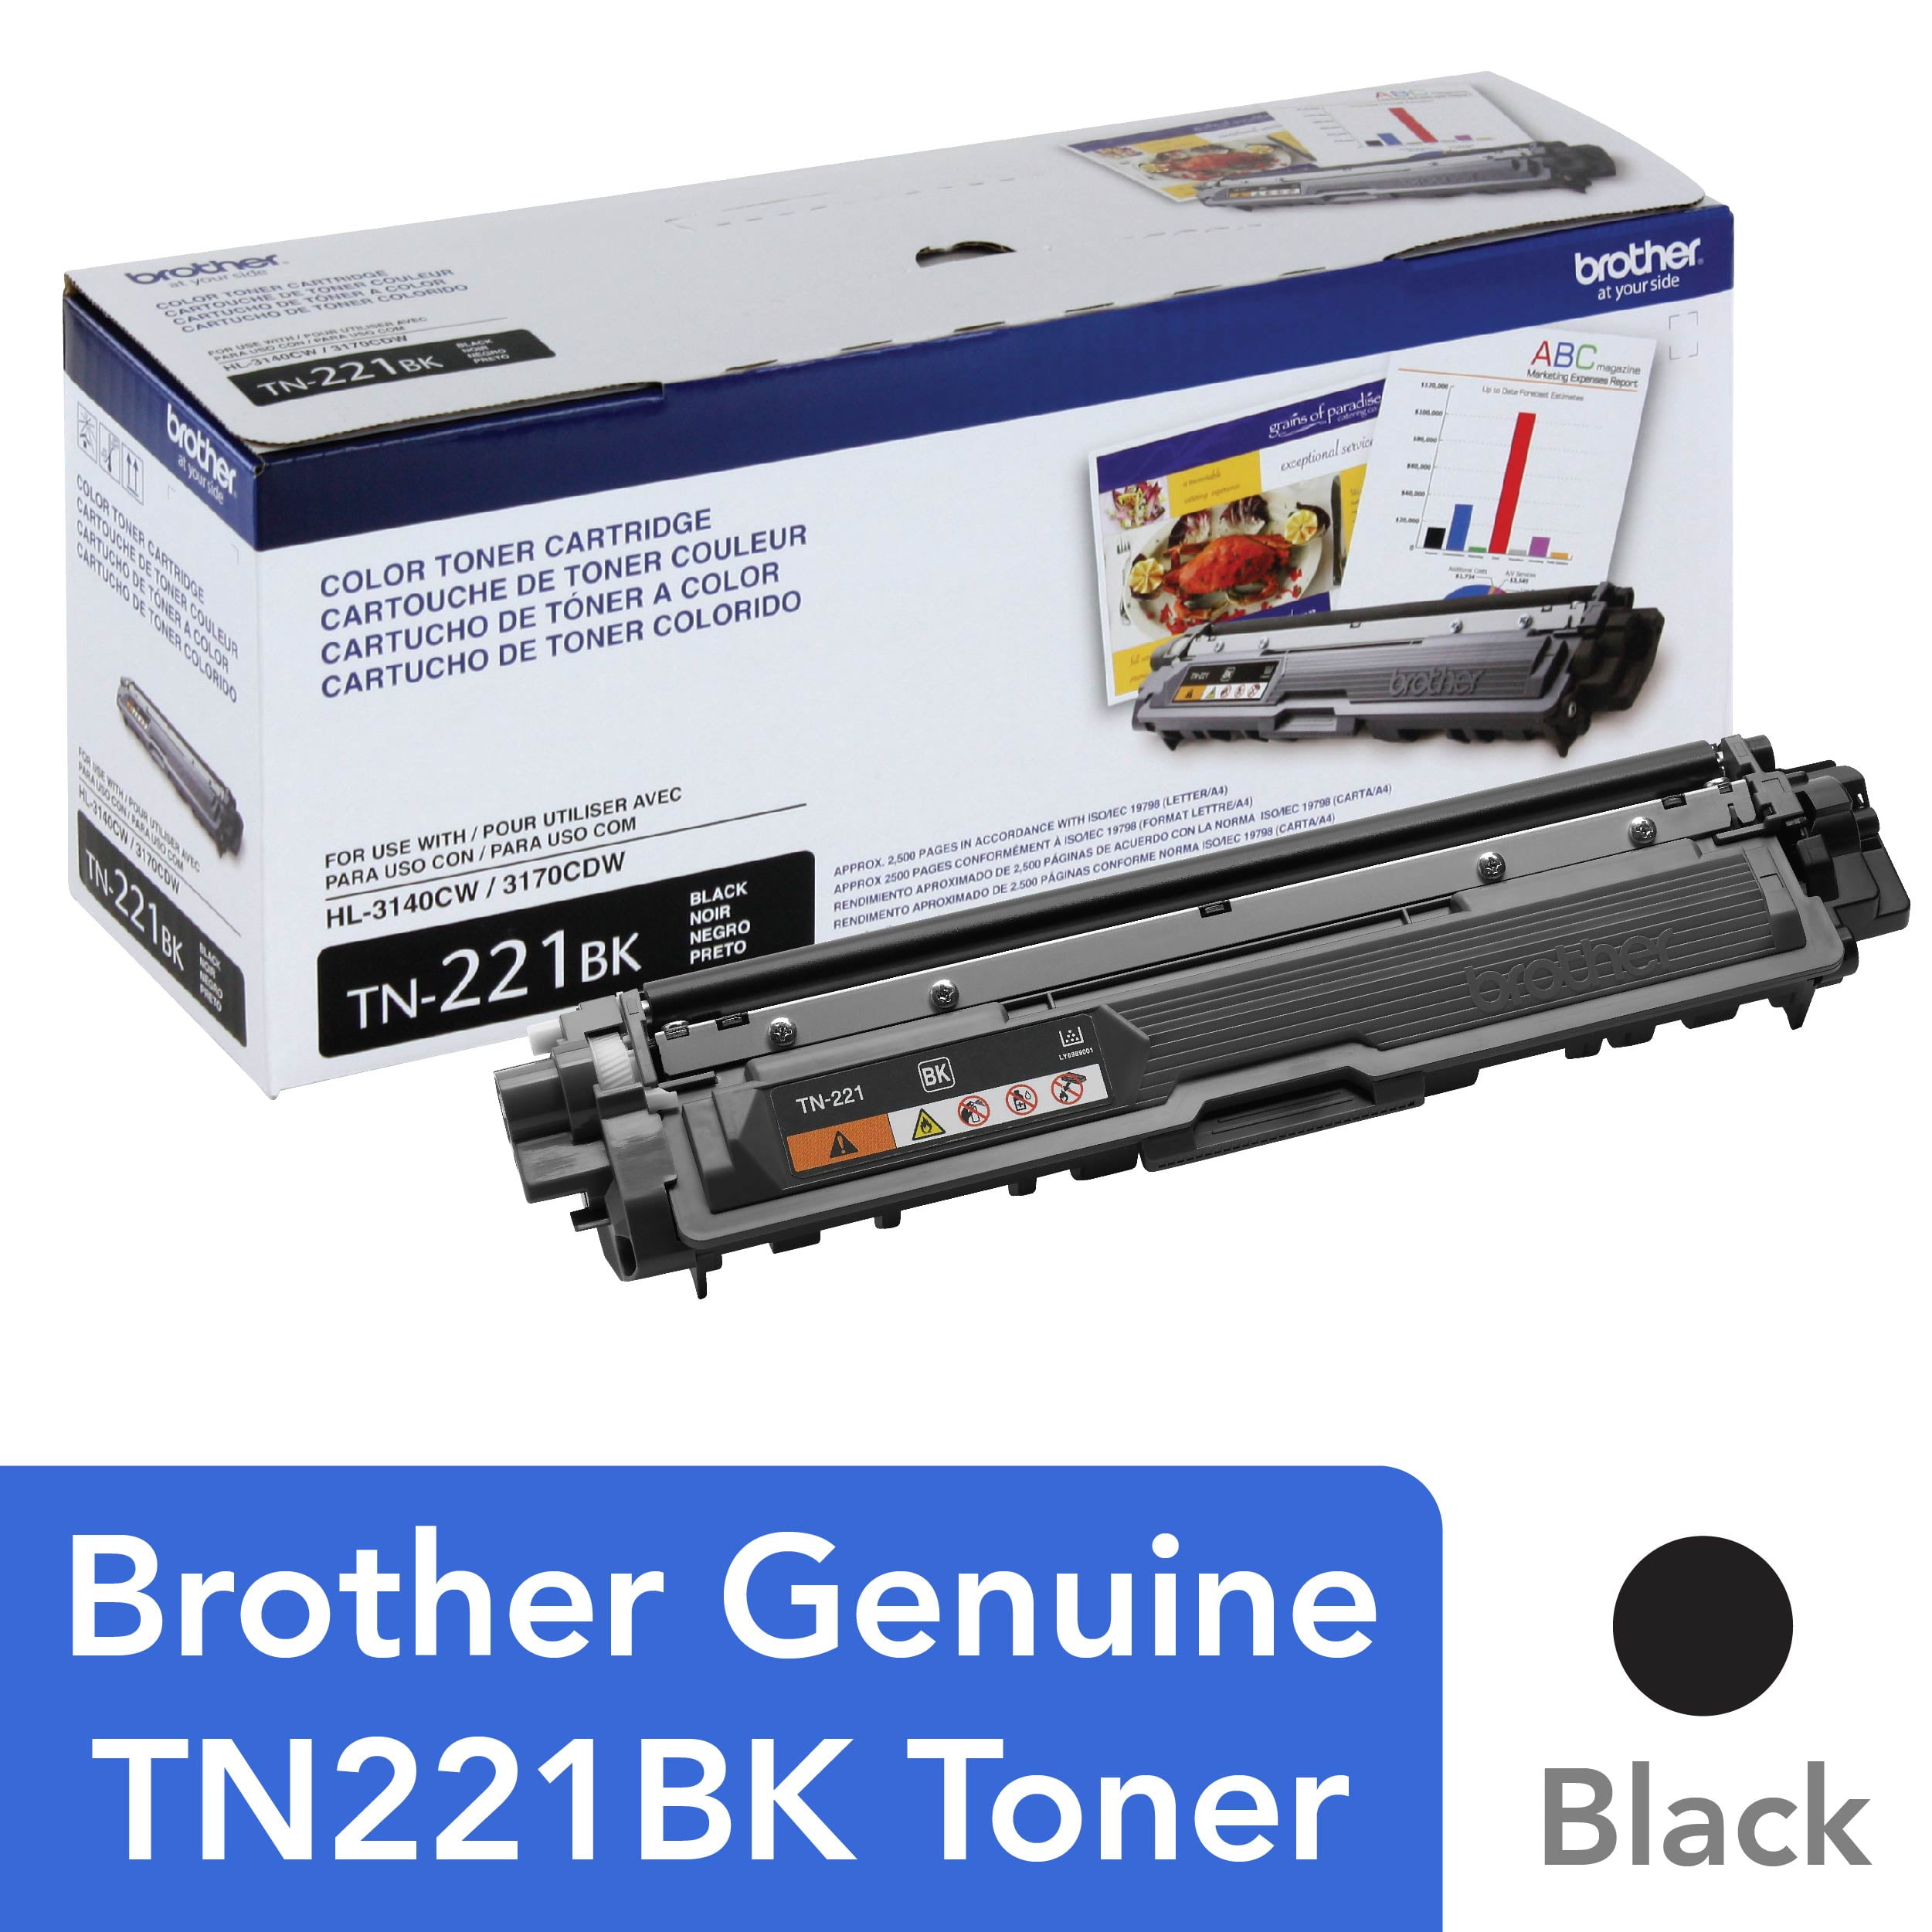 Brother TN221BK Toner Cartridge - Black (For Brother HL-3140CW, HL